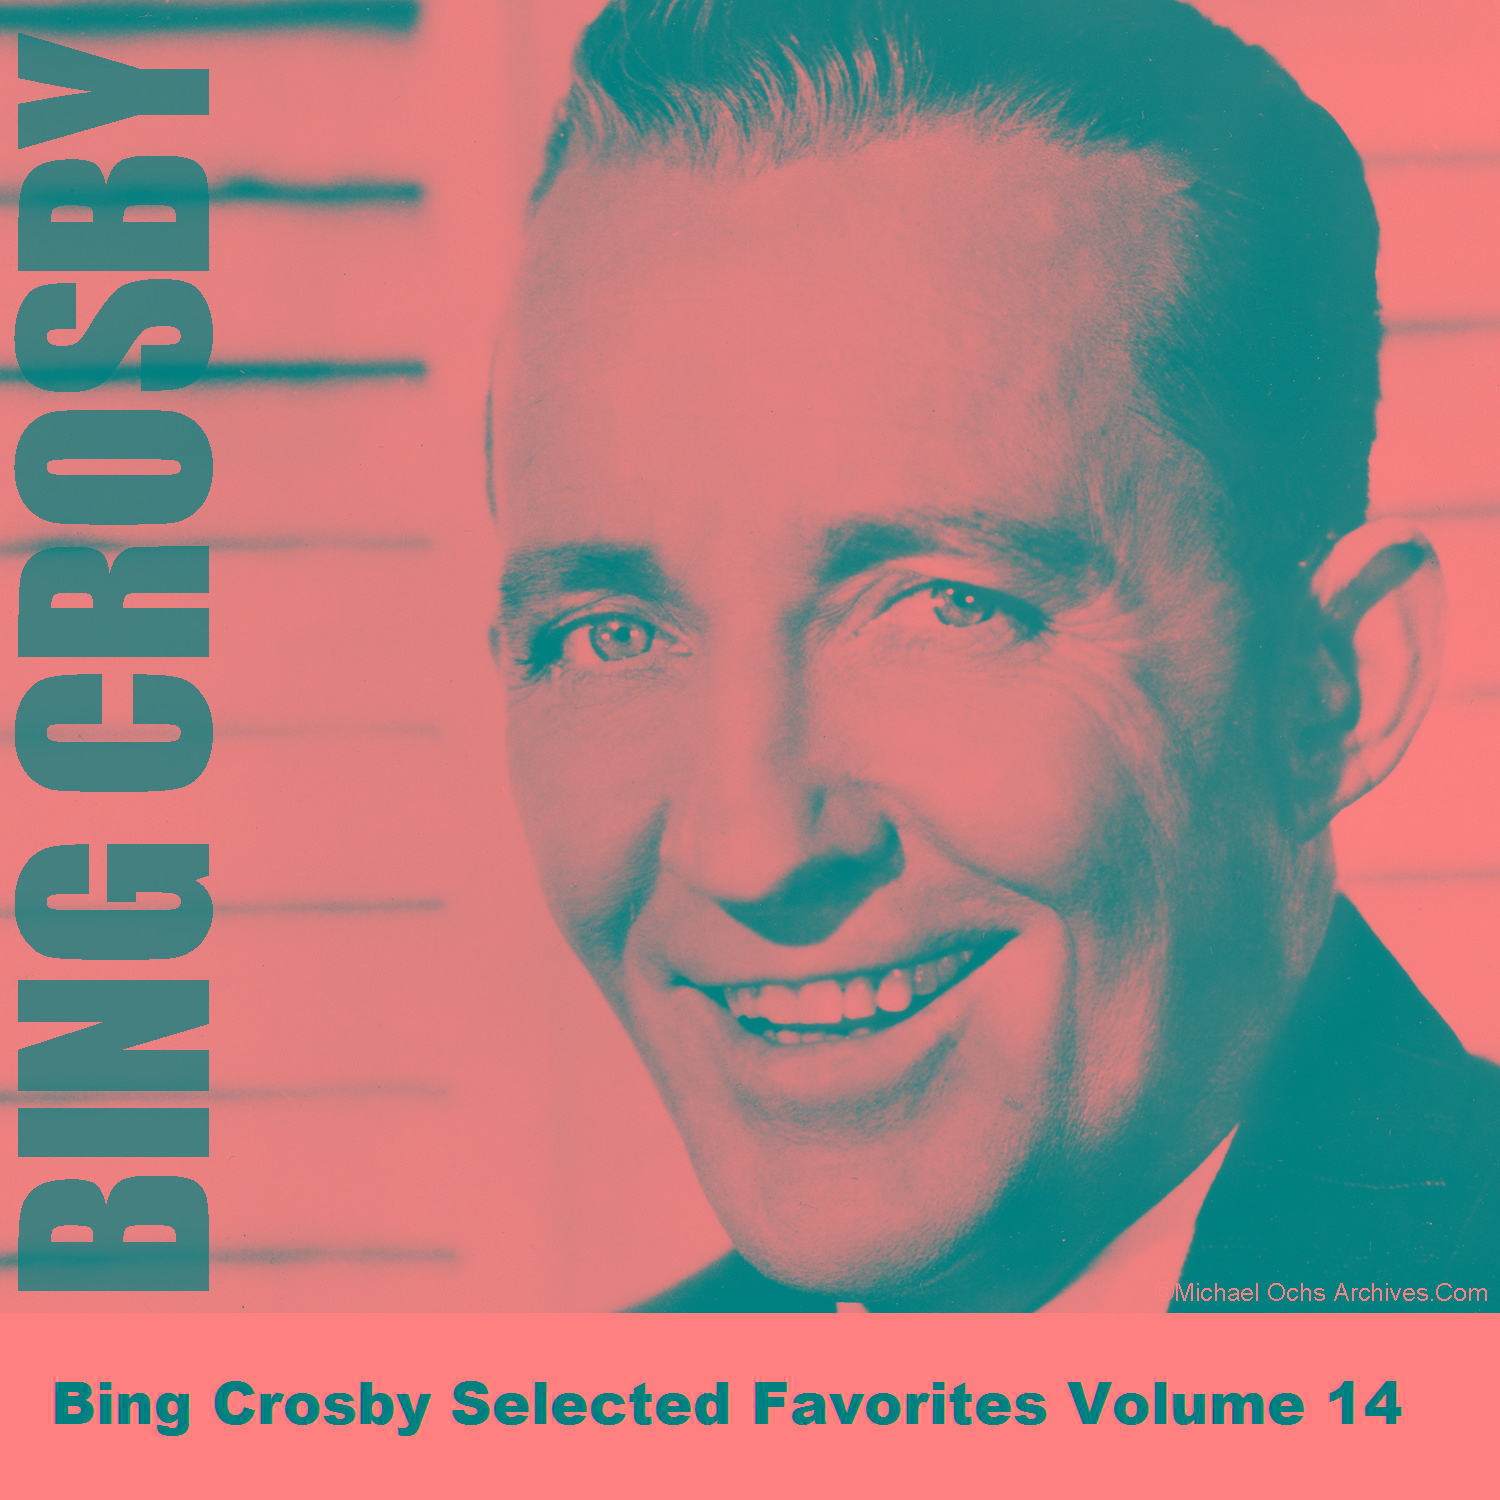 Bing Crosby Selected Favorites Volume 14